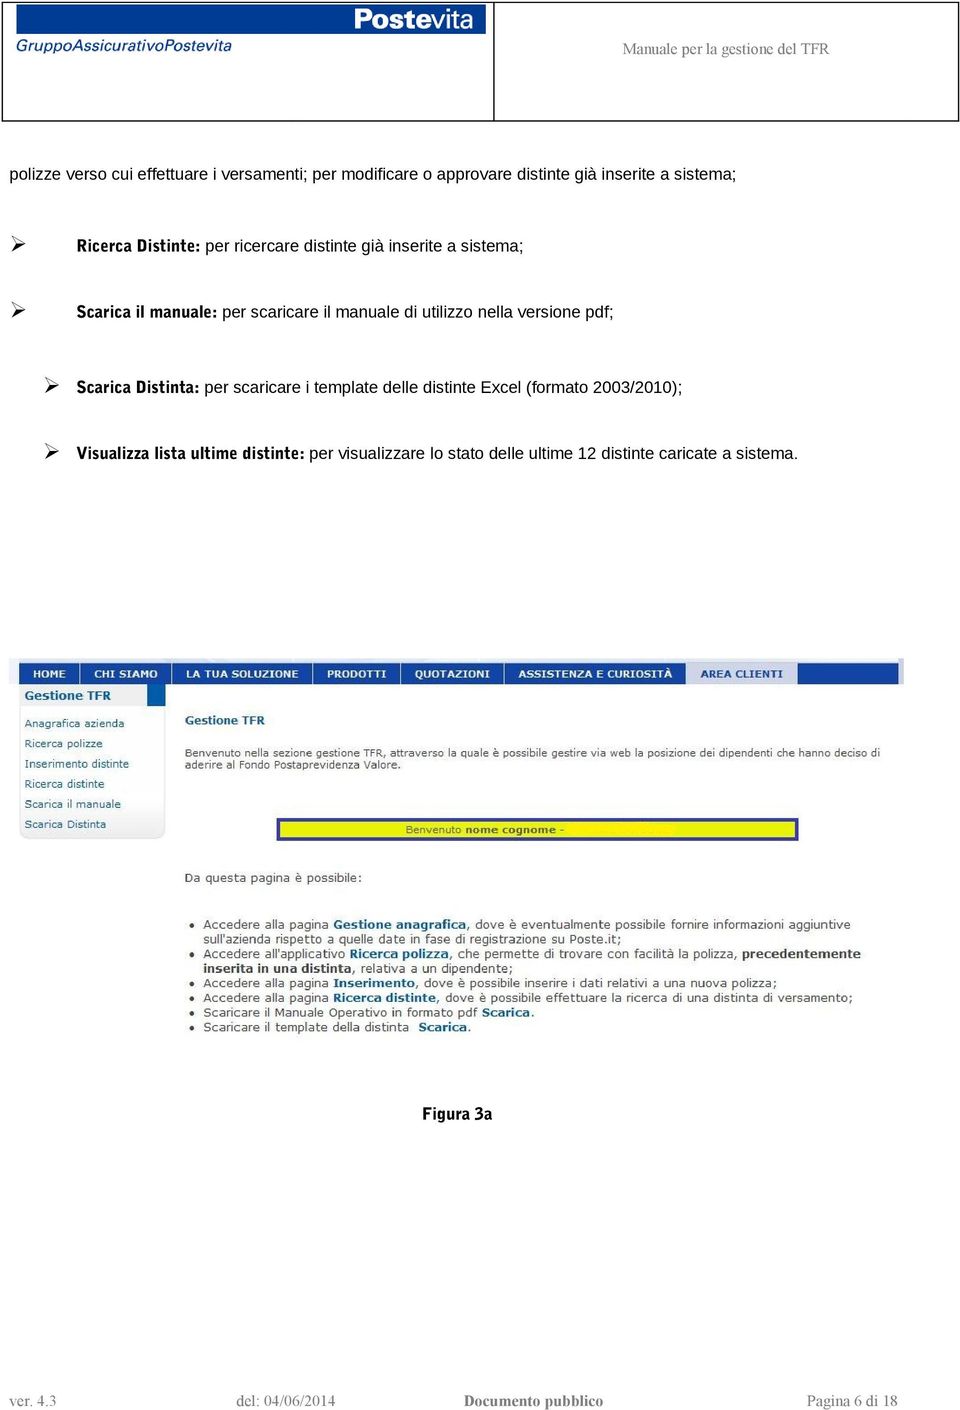 nella versione pdf; Scarica Distinta: per scaricare i template delle distinte Excel (formato 2003/2010);